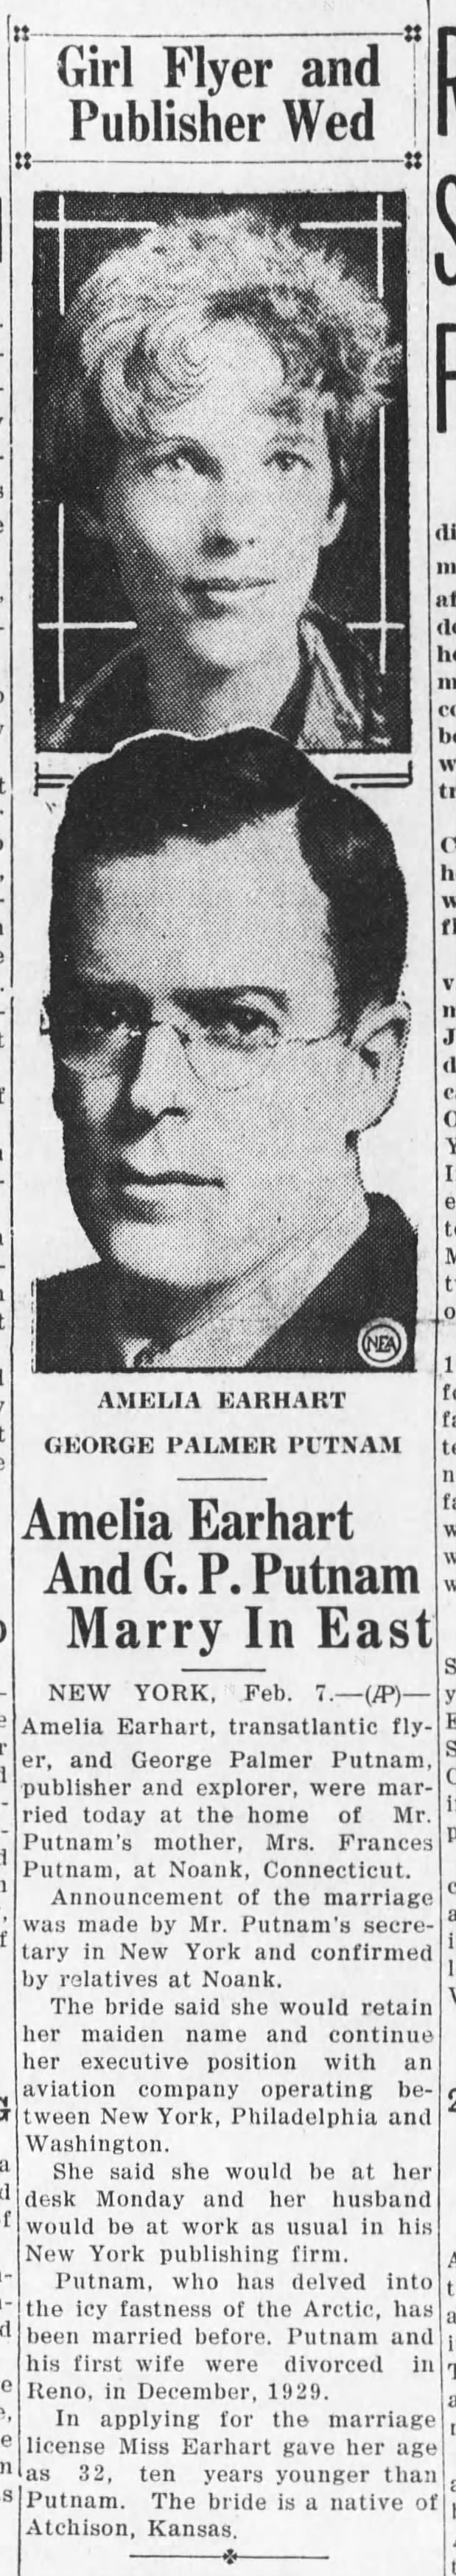 Amelia Earhart marries G.P. Putnam